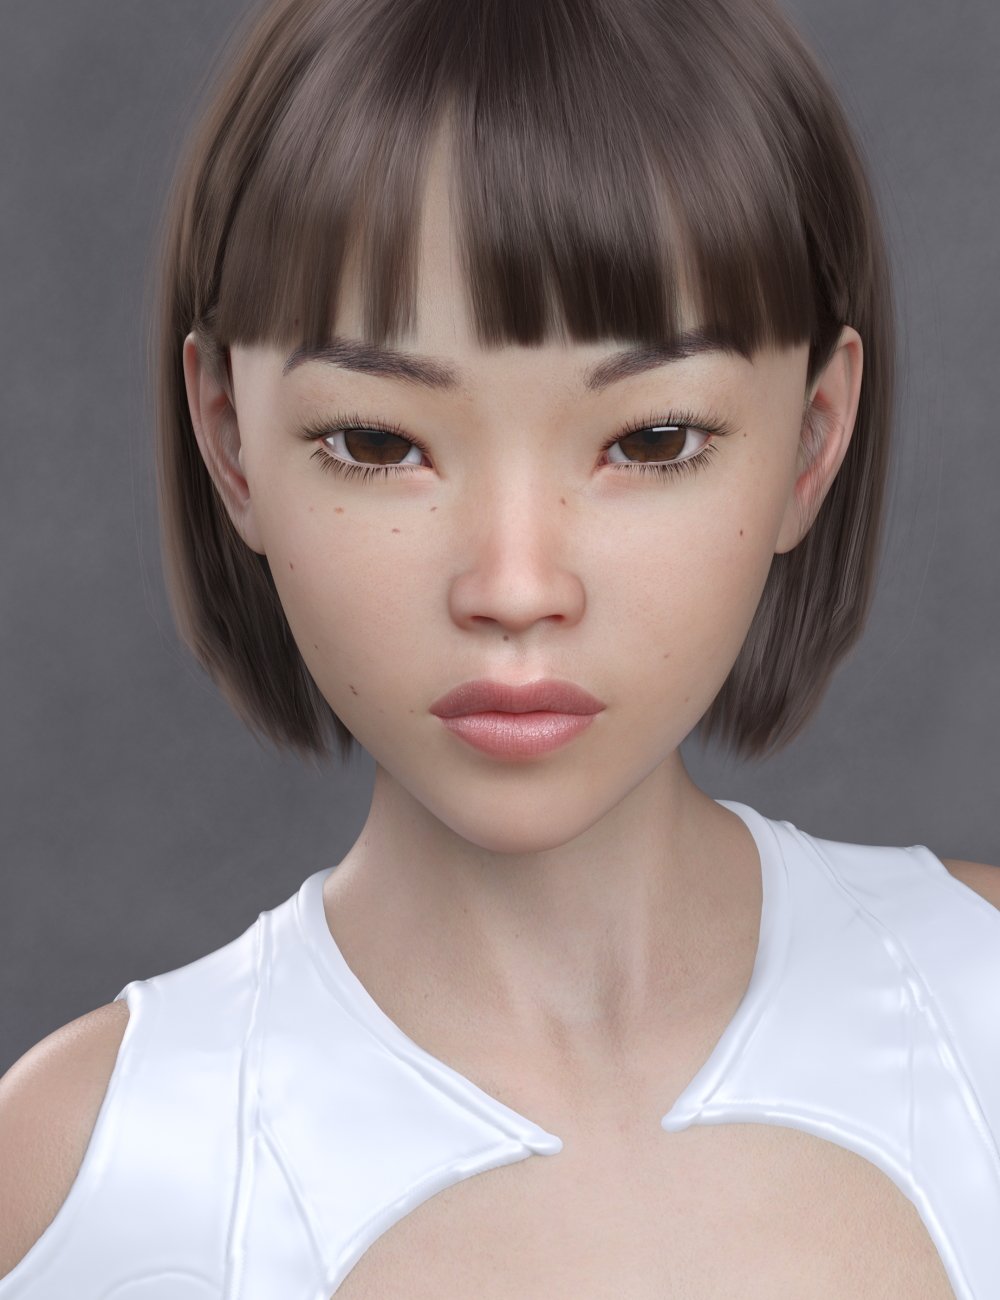 Sukai 8 by: MorrisThorne, 3D Models by Daz 3D